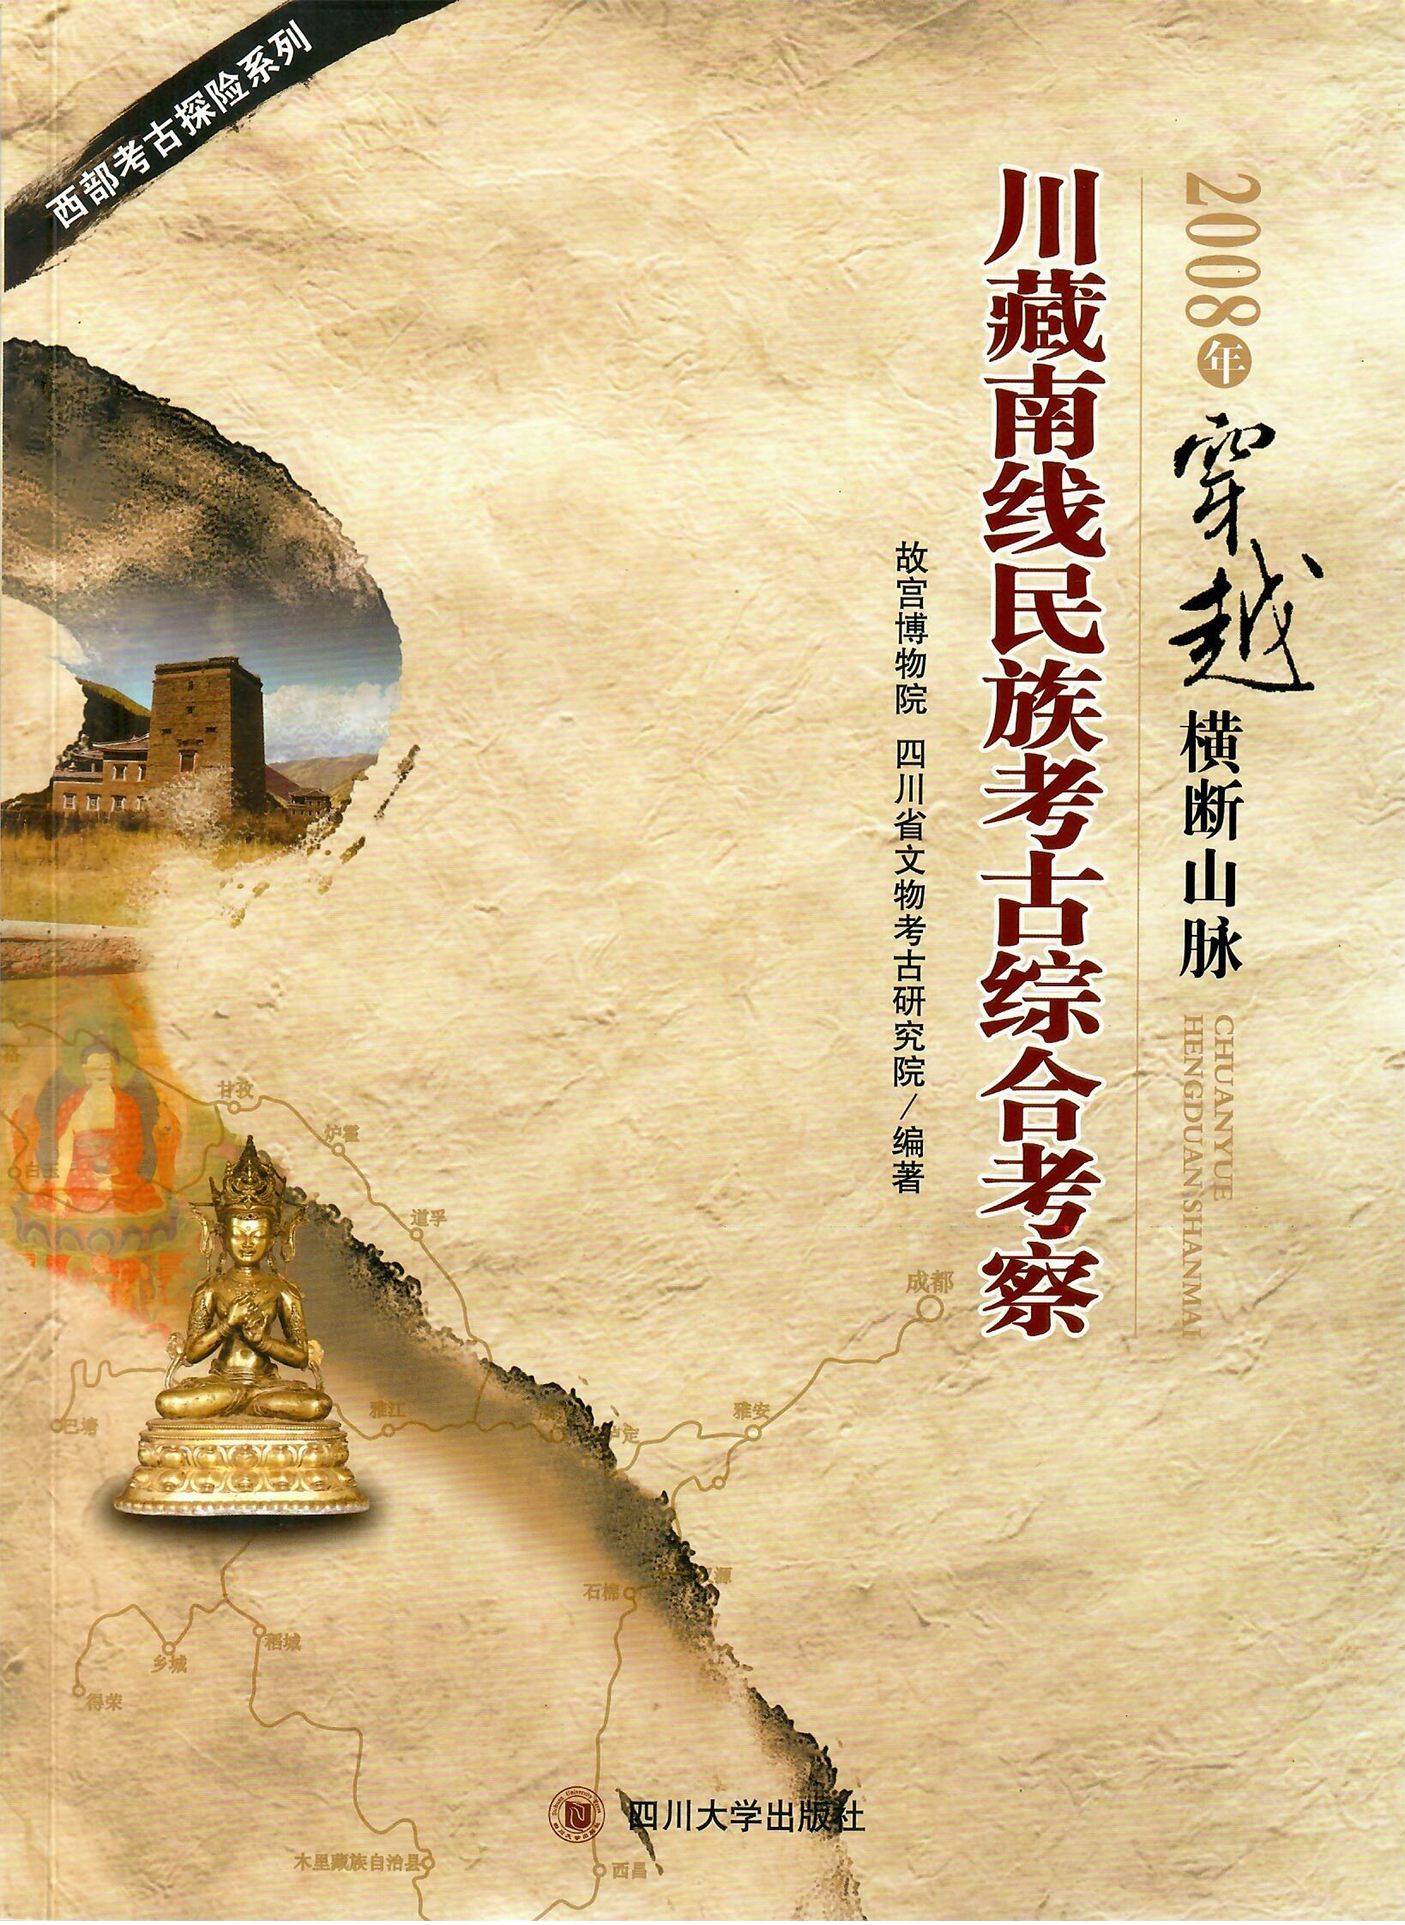 2008年穿越横断山脉-川藏南线民族考古综合考察